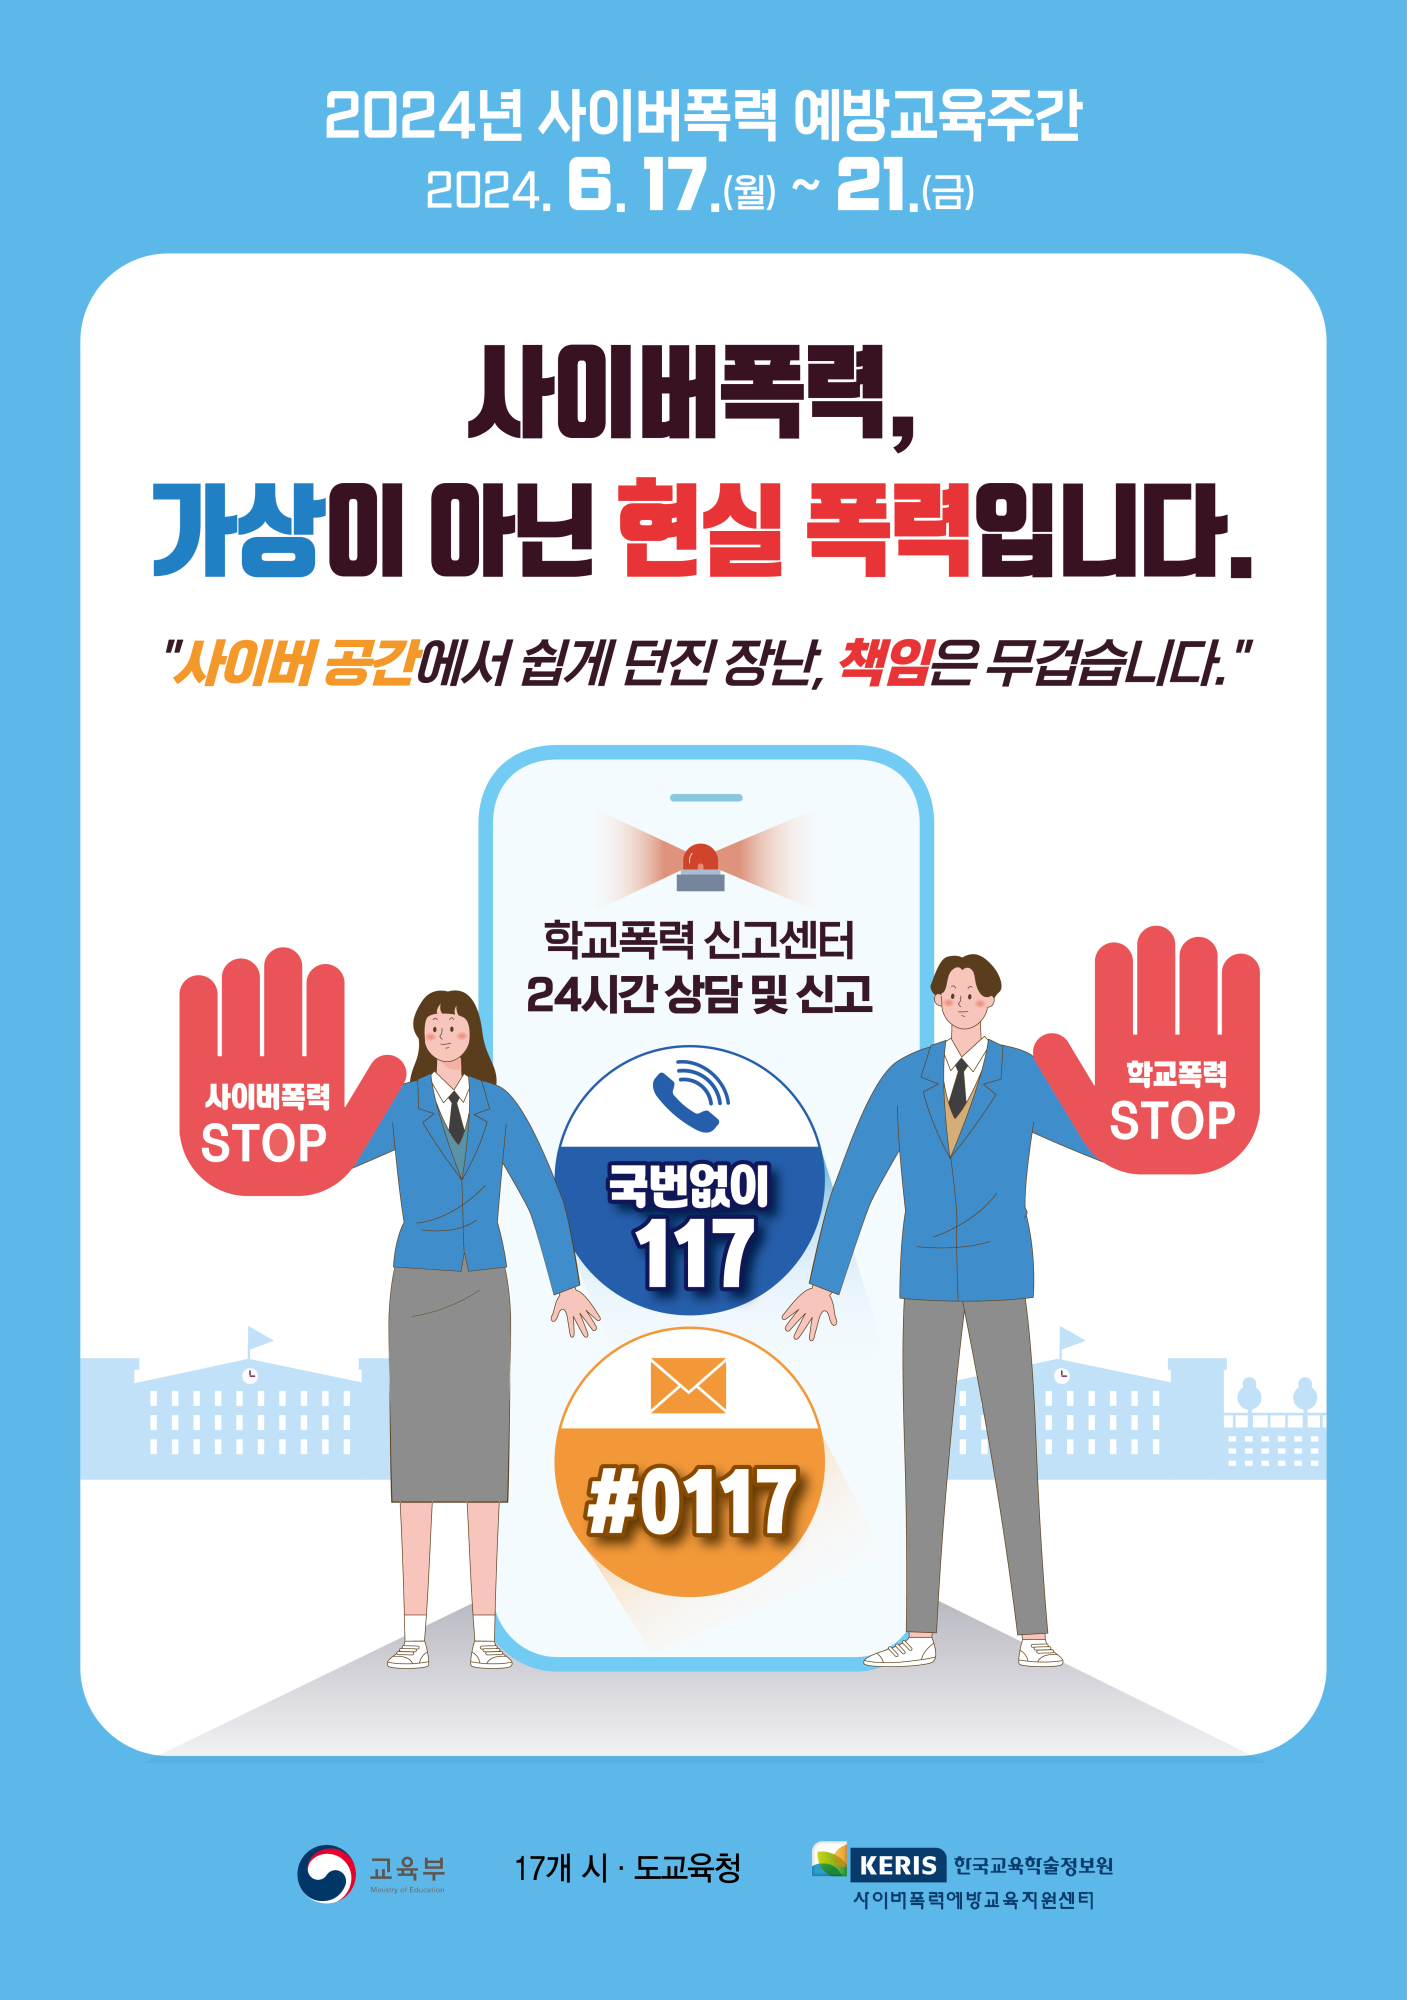 붙임 3-1. 사이버폭력 예방교육주간 홍보 포스터